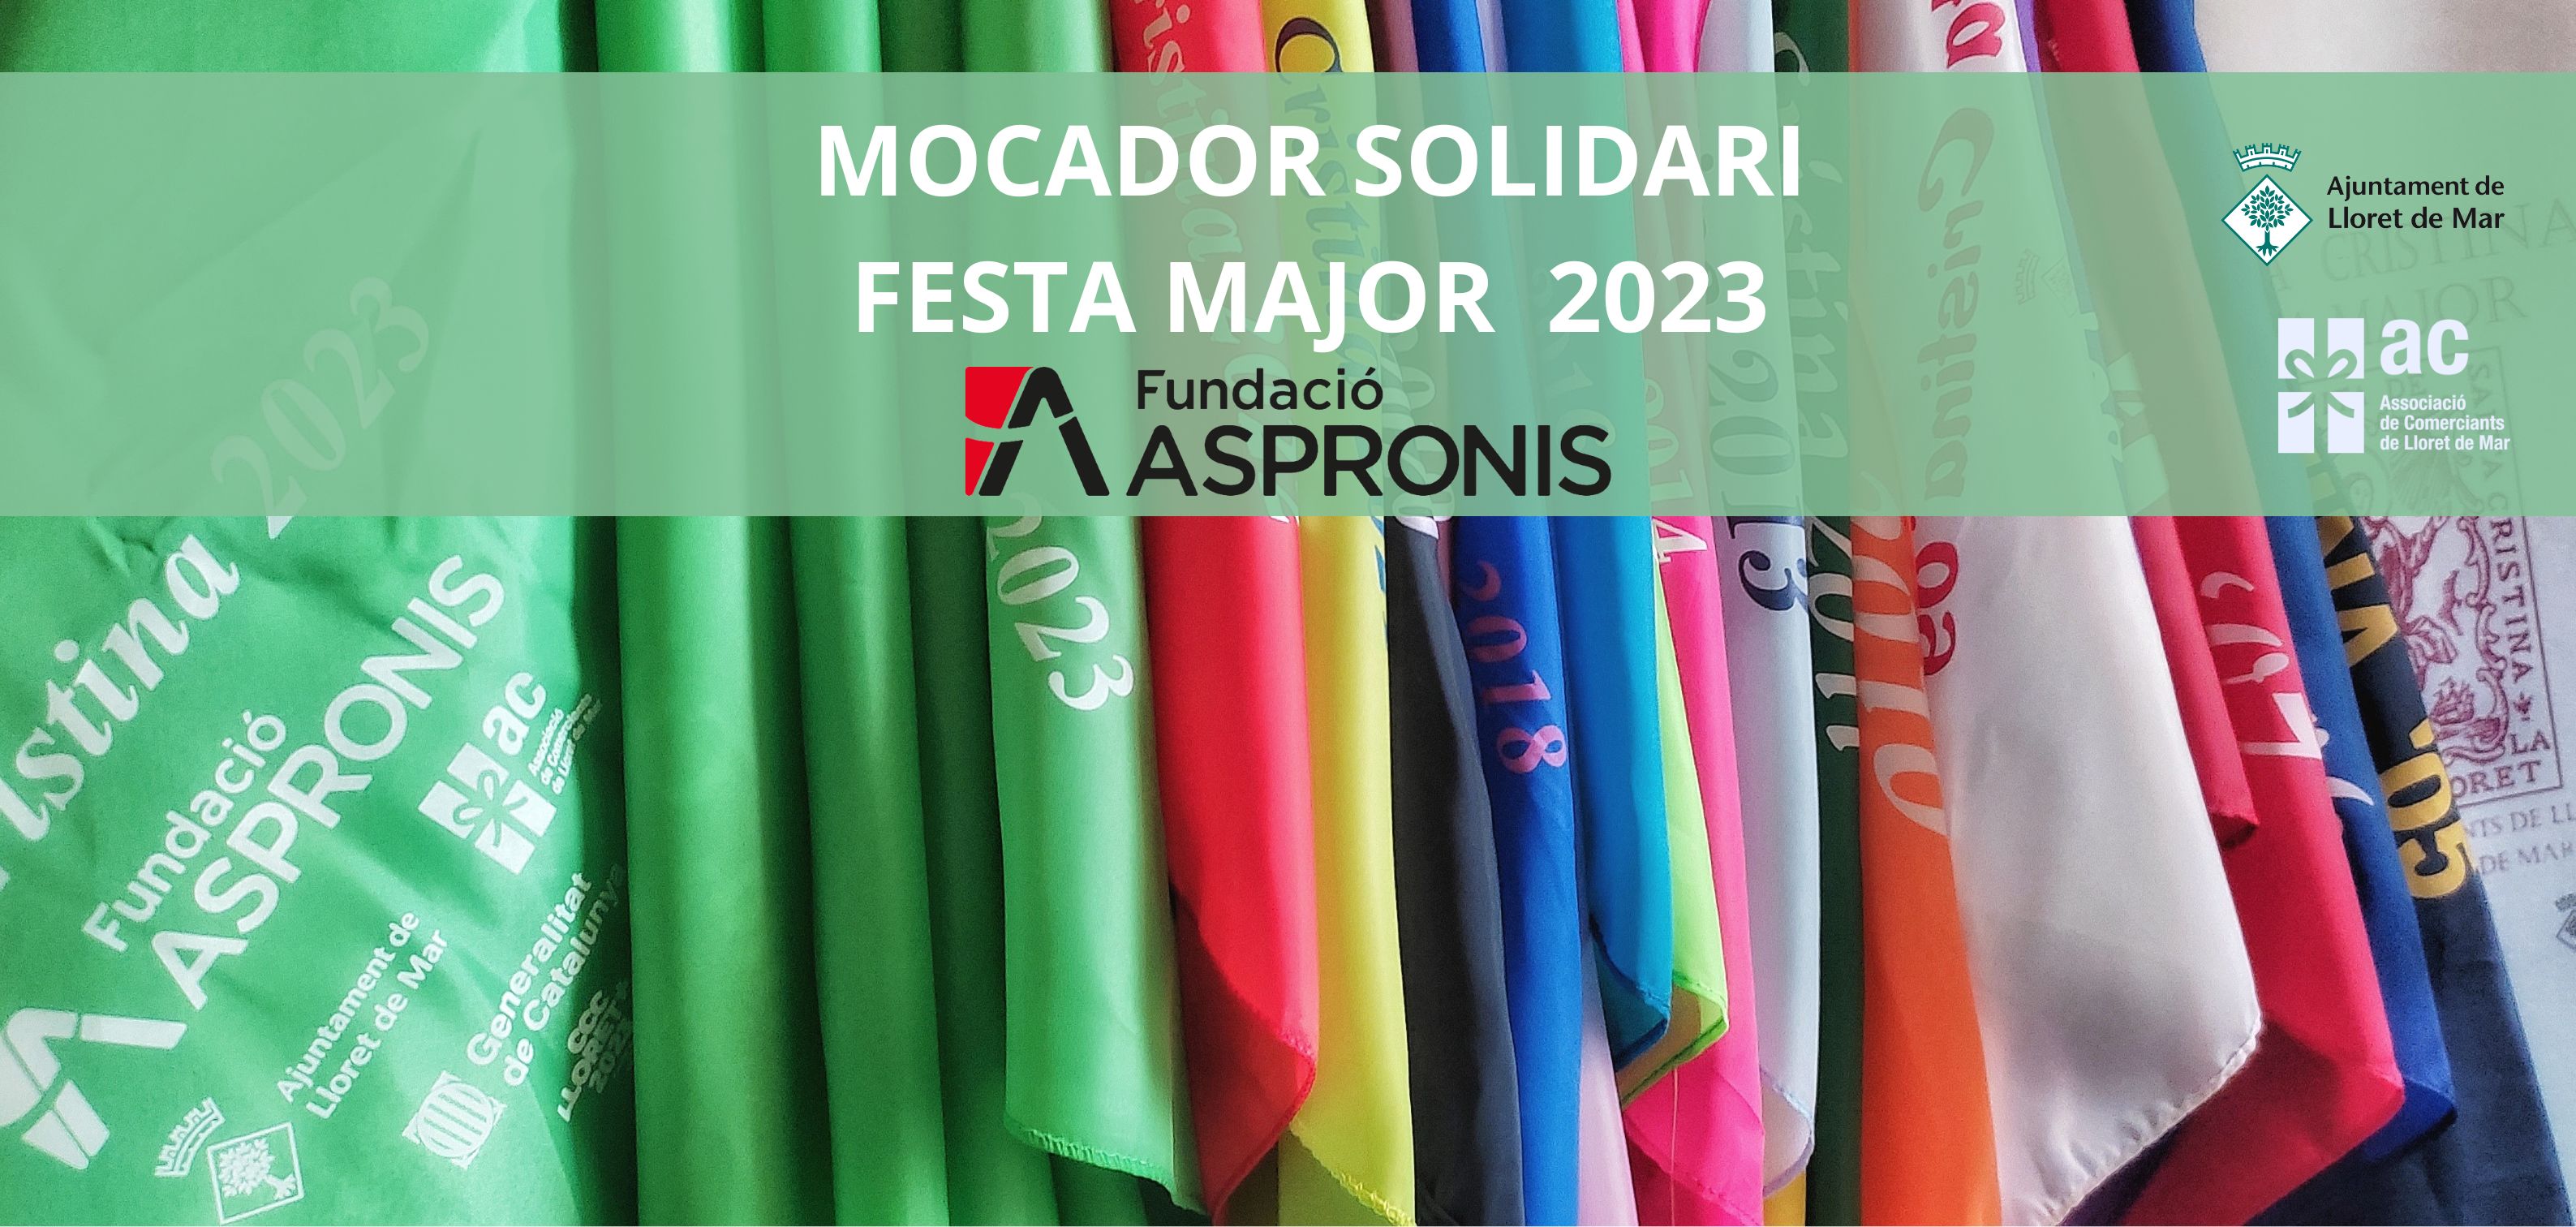 MOCADORS SOLIDARIS FESTA MAJOR 2023